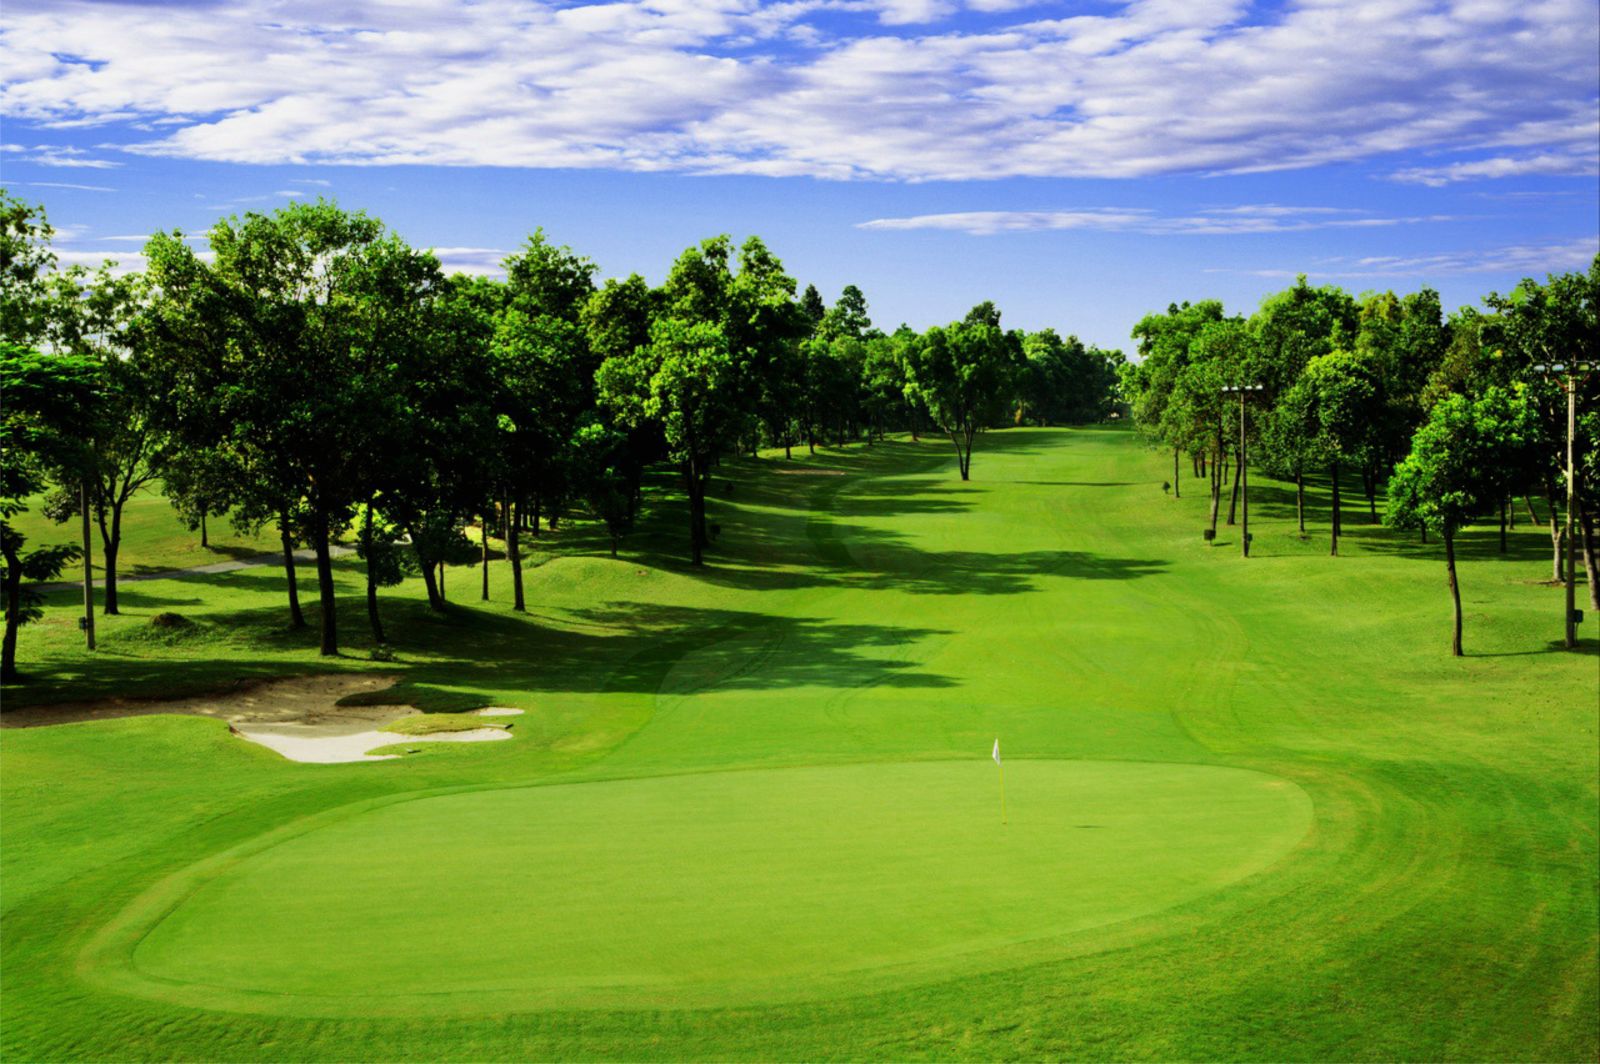 hiện nay đã có tới hàng chục các sân golf khác được xây dựng bằng các nguồn đầu tư trong nước. 